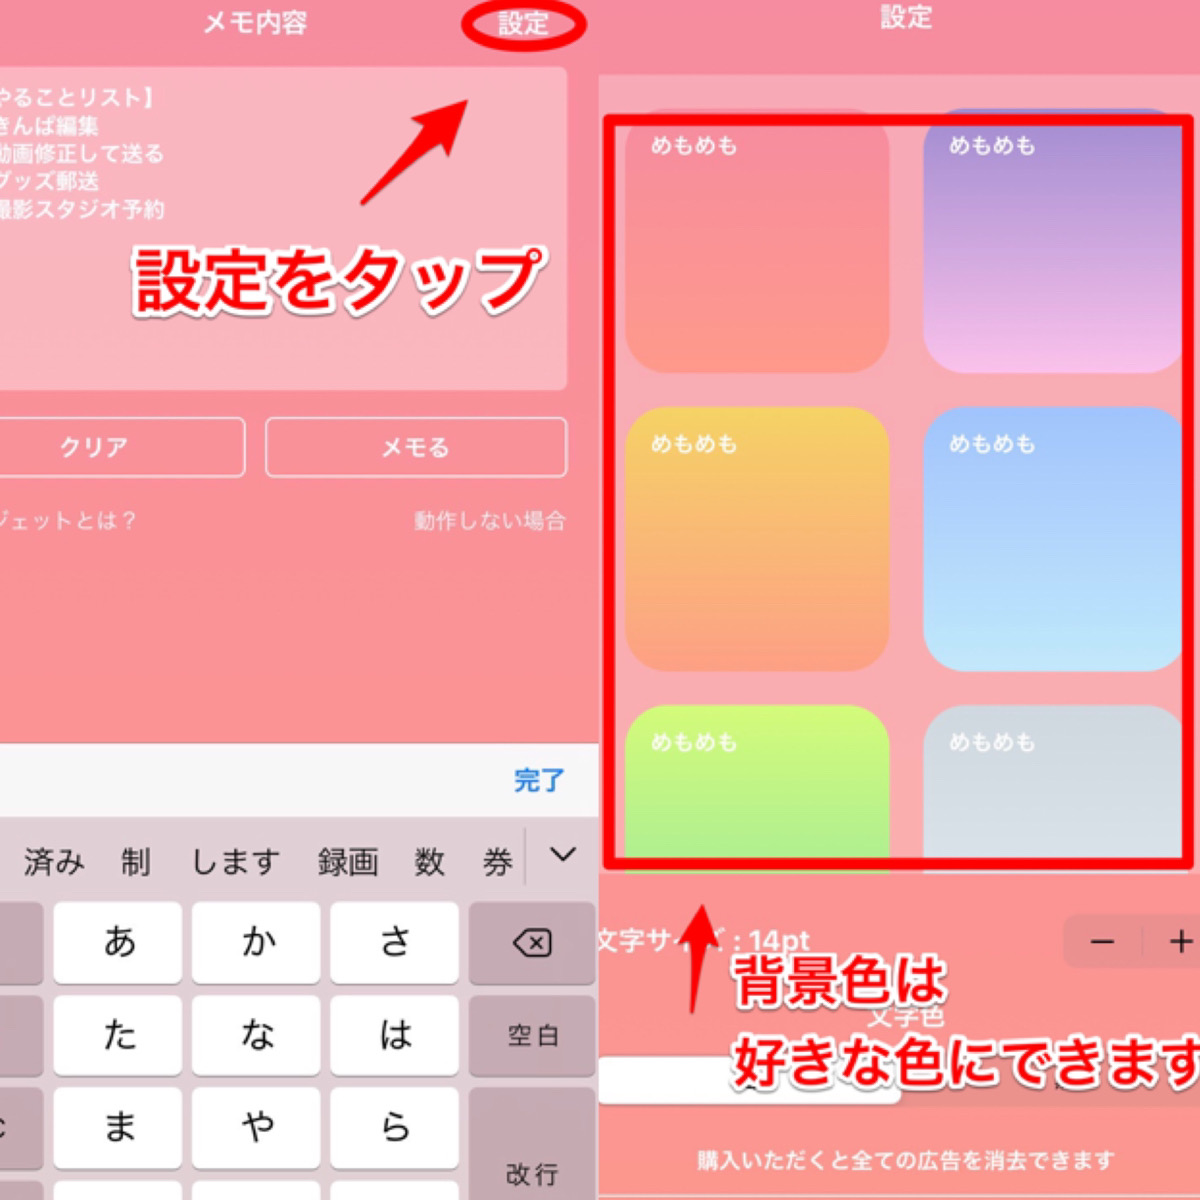 Widget Memo を使って好きな色のメモ帳をホーム画面に追加しよう シンプルで使いやすく 自由に色変え可能 Apptopi